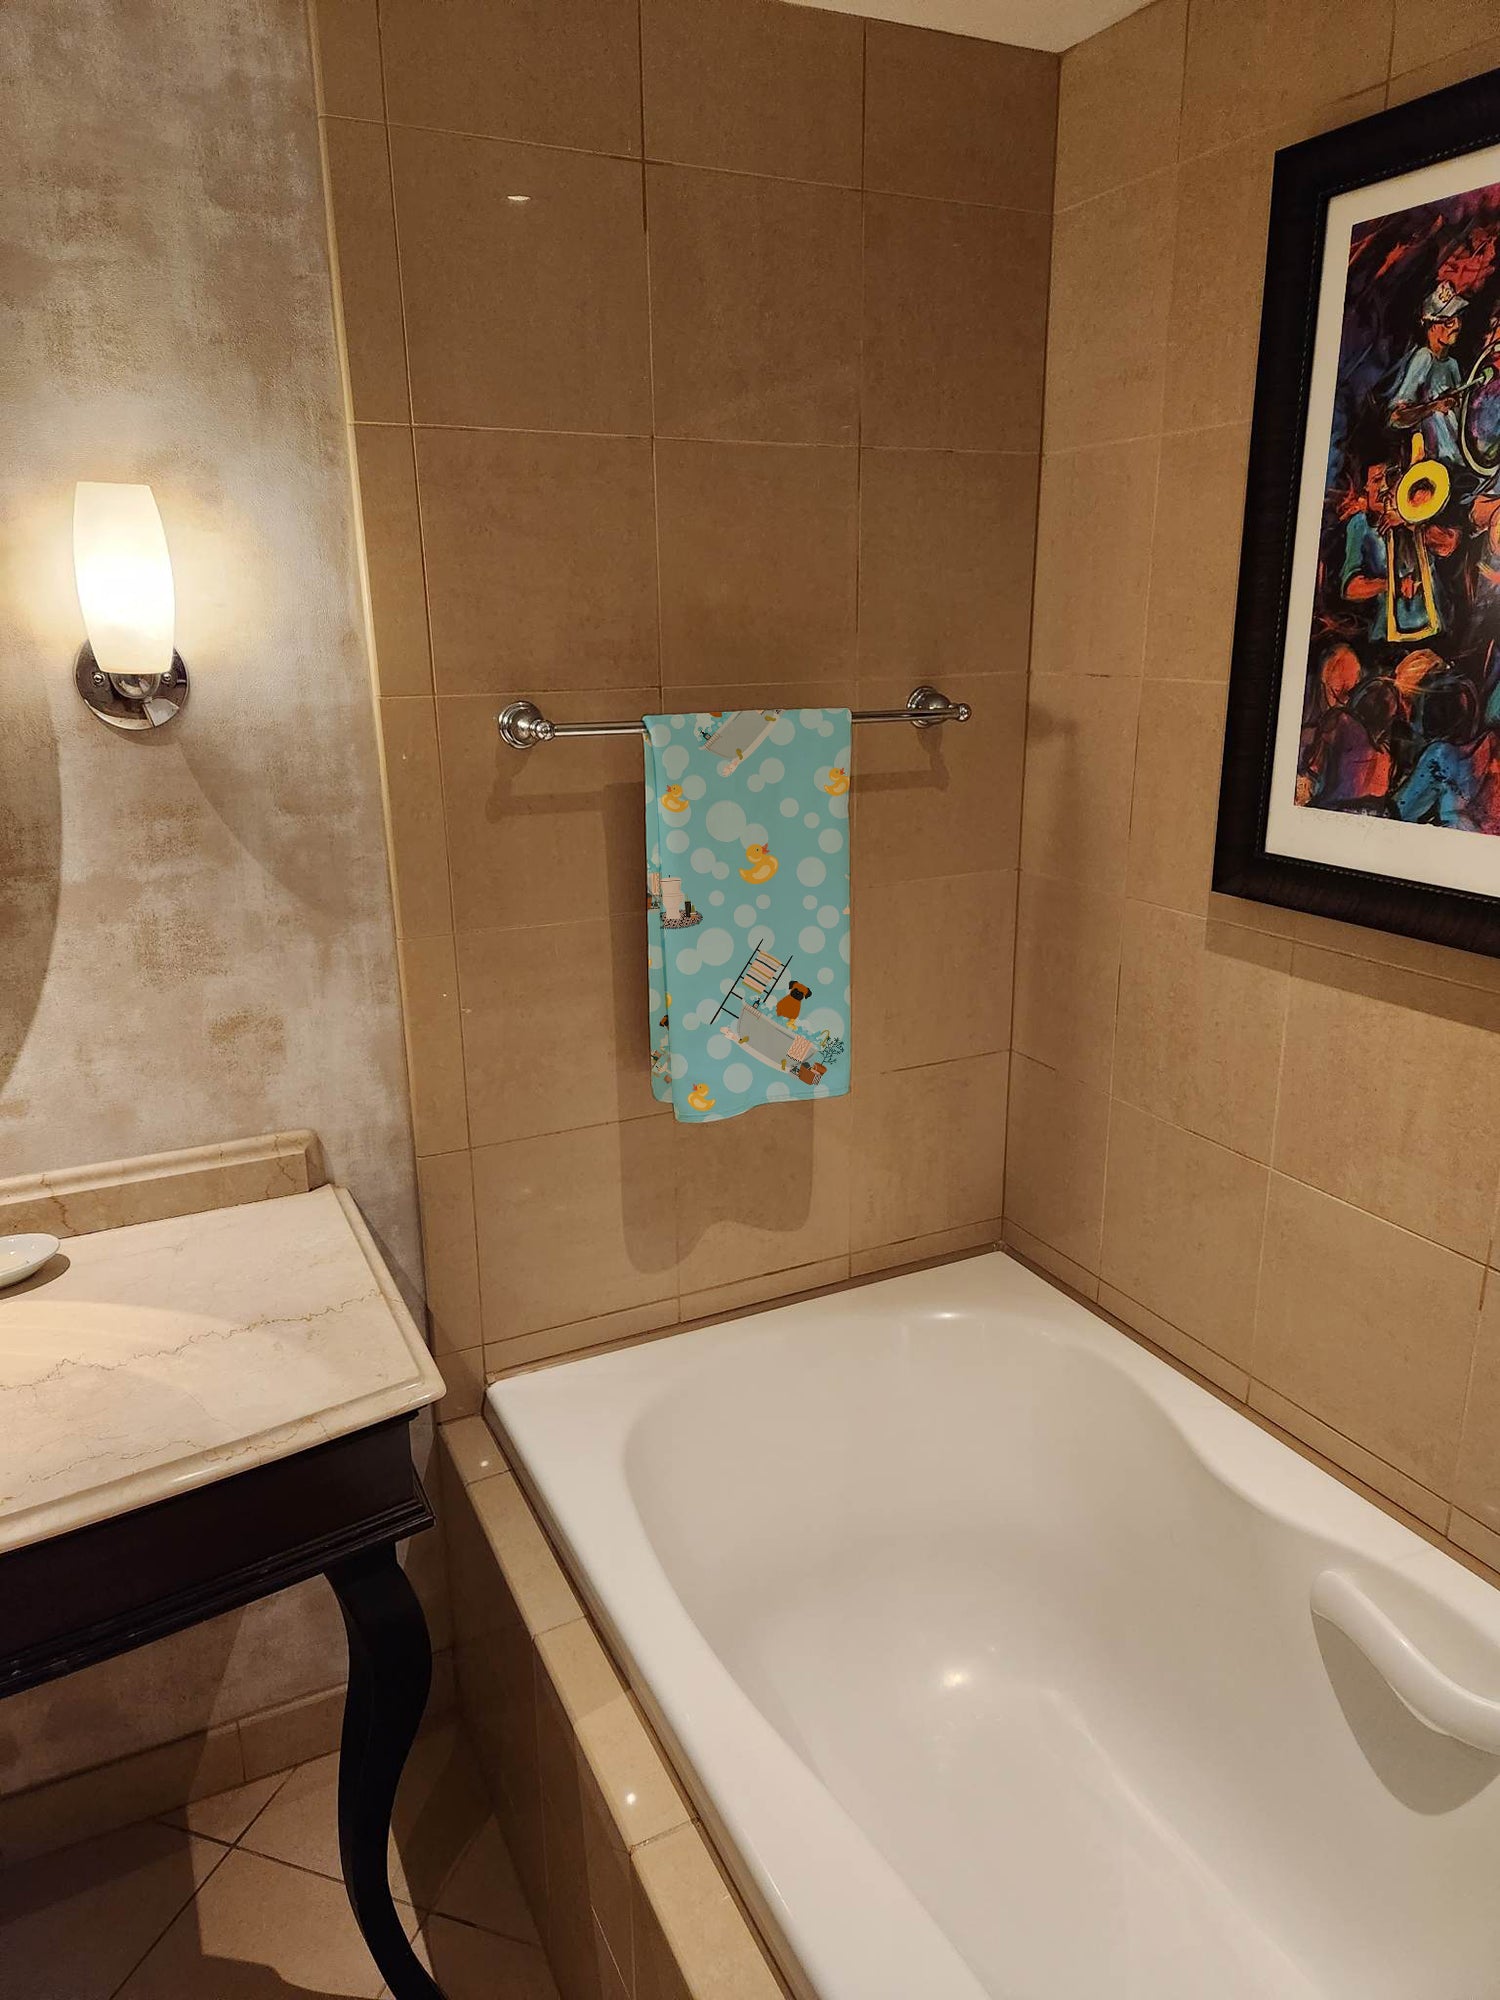 Fawn Boxer in Bathtub Bath Towel Large